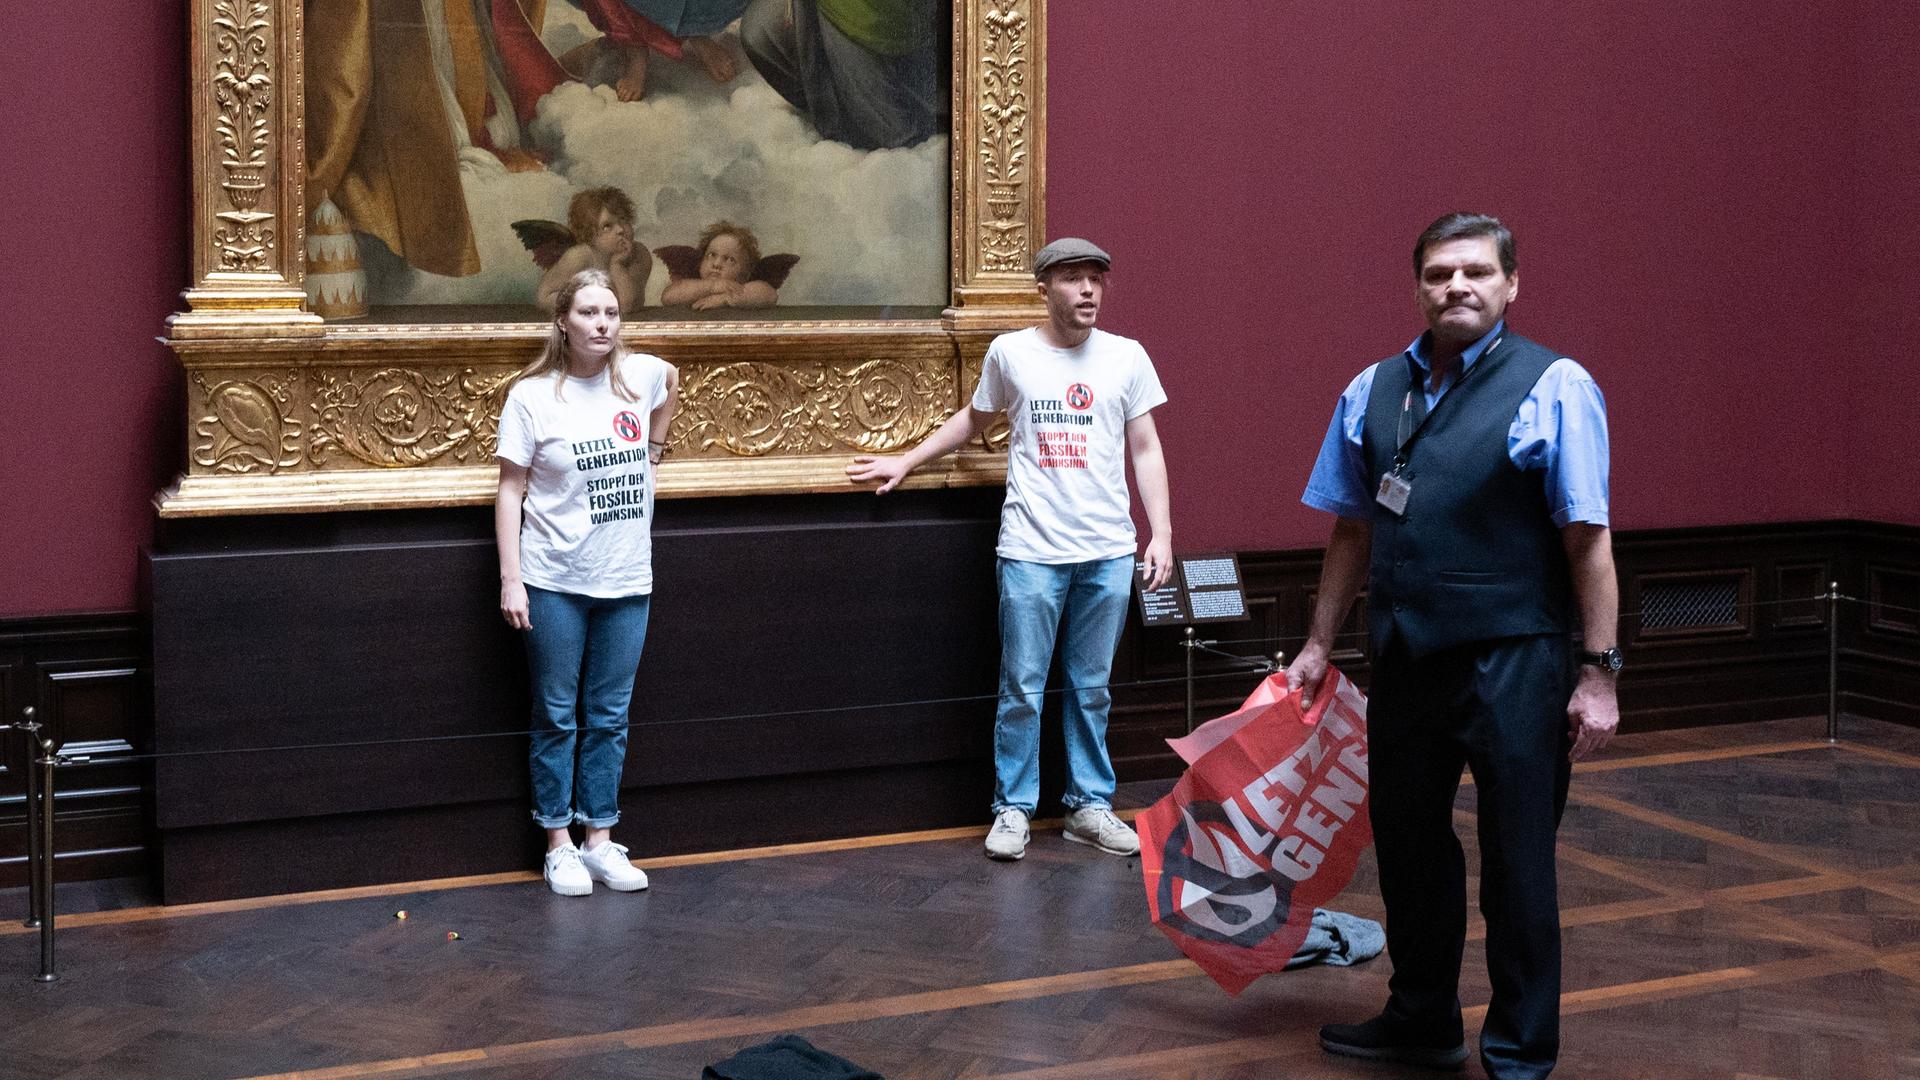 Dresden: Zwei Umweltaktivisten der Gruppe "Letzte Generation" stehen in der Gemäldegalerie Alte Meister an dem Gemälde "Sixtinische Madonna" von Raffael.